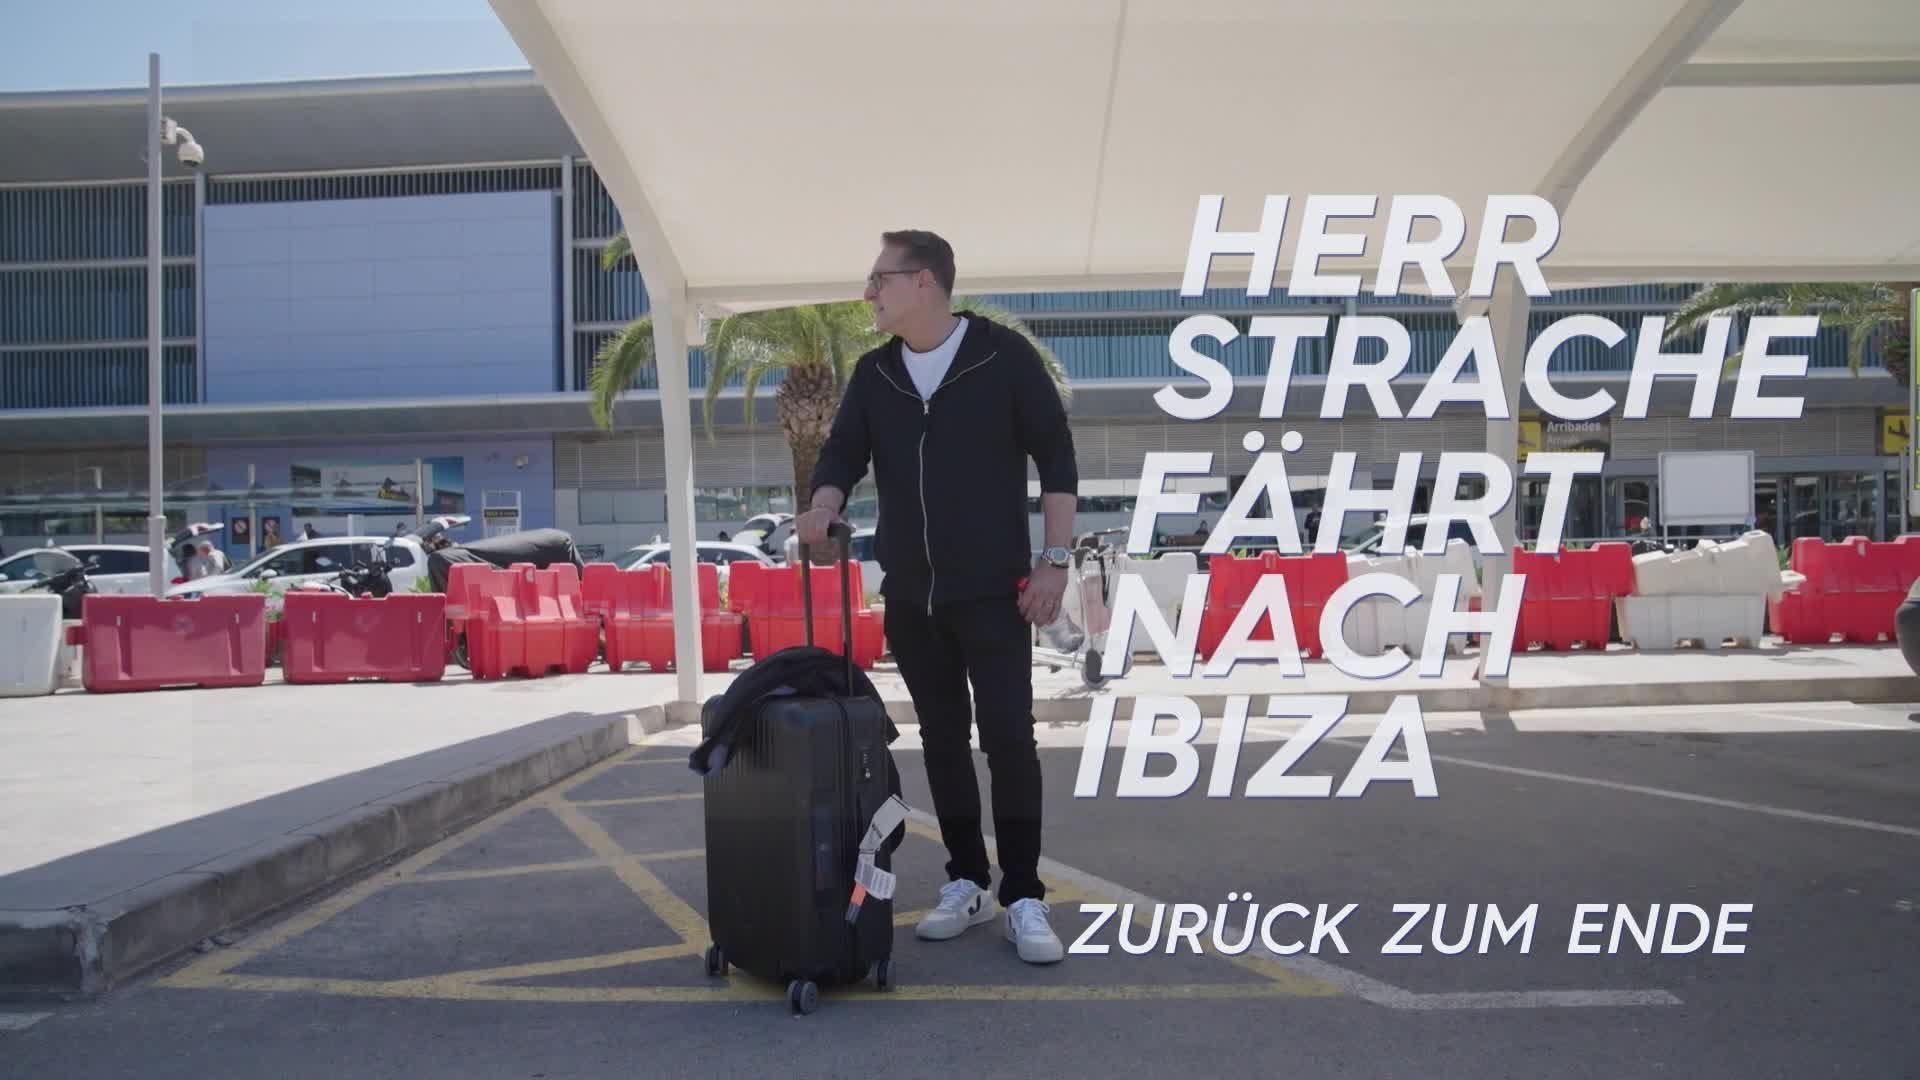 Herr Strache fährt nach Ibiza – Zurück zum Ende